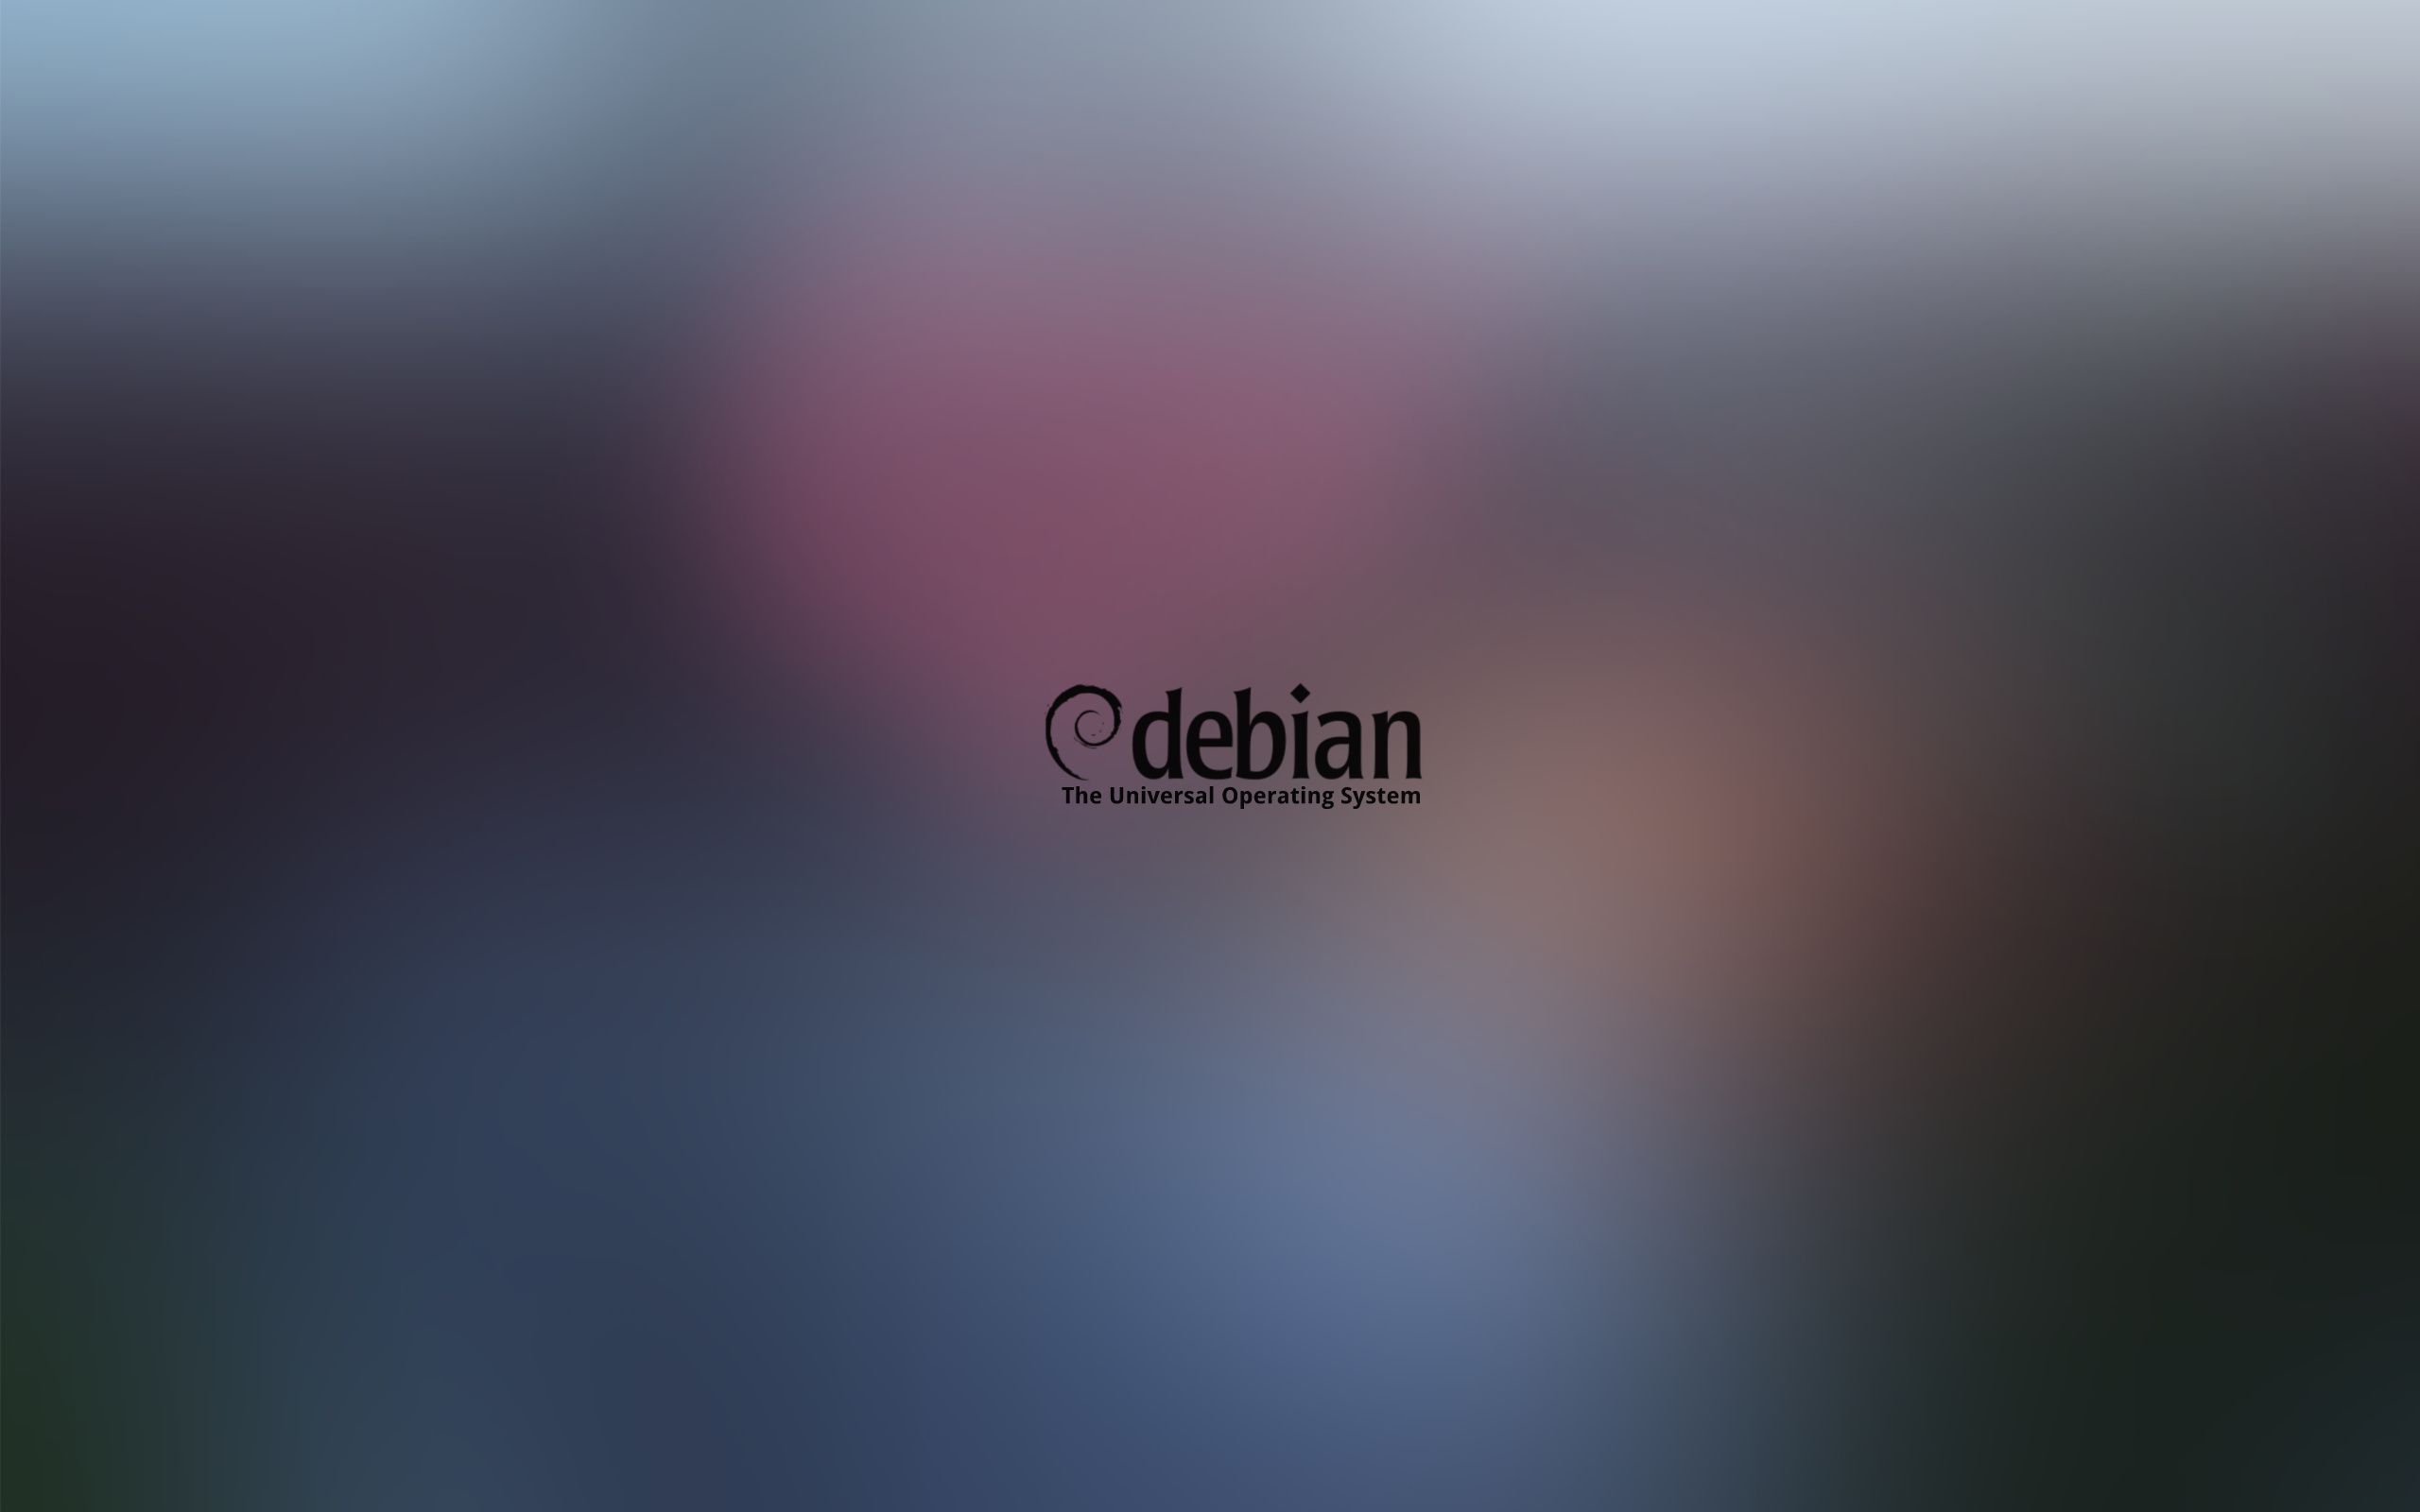 Debian by Foffanna on DeviantArt